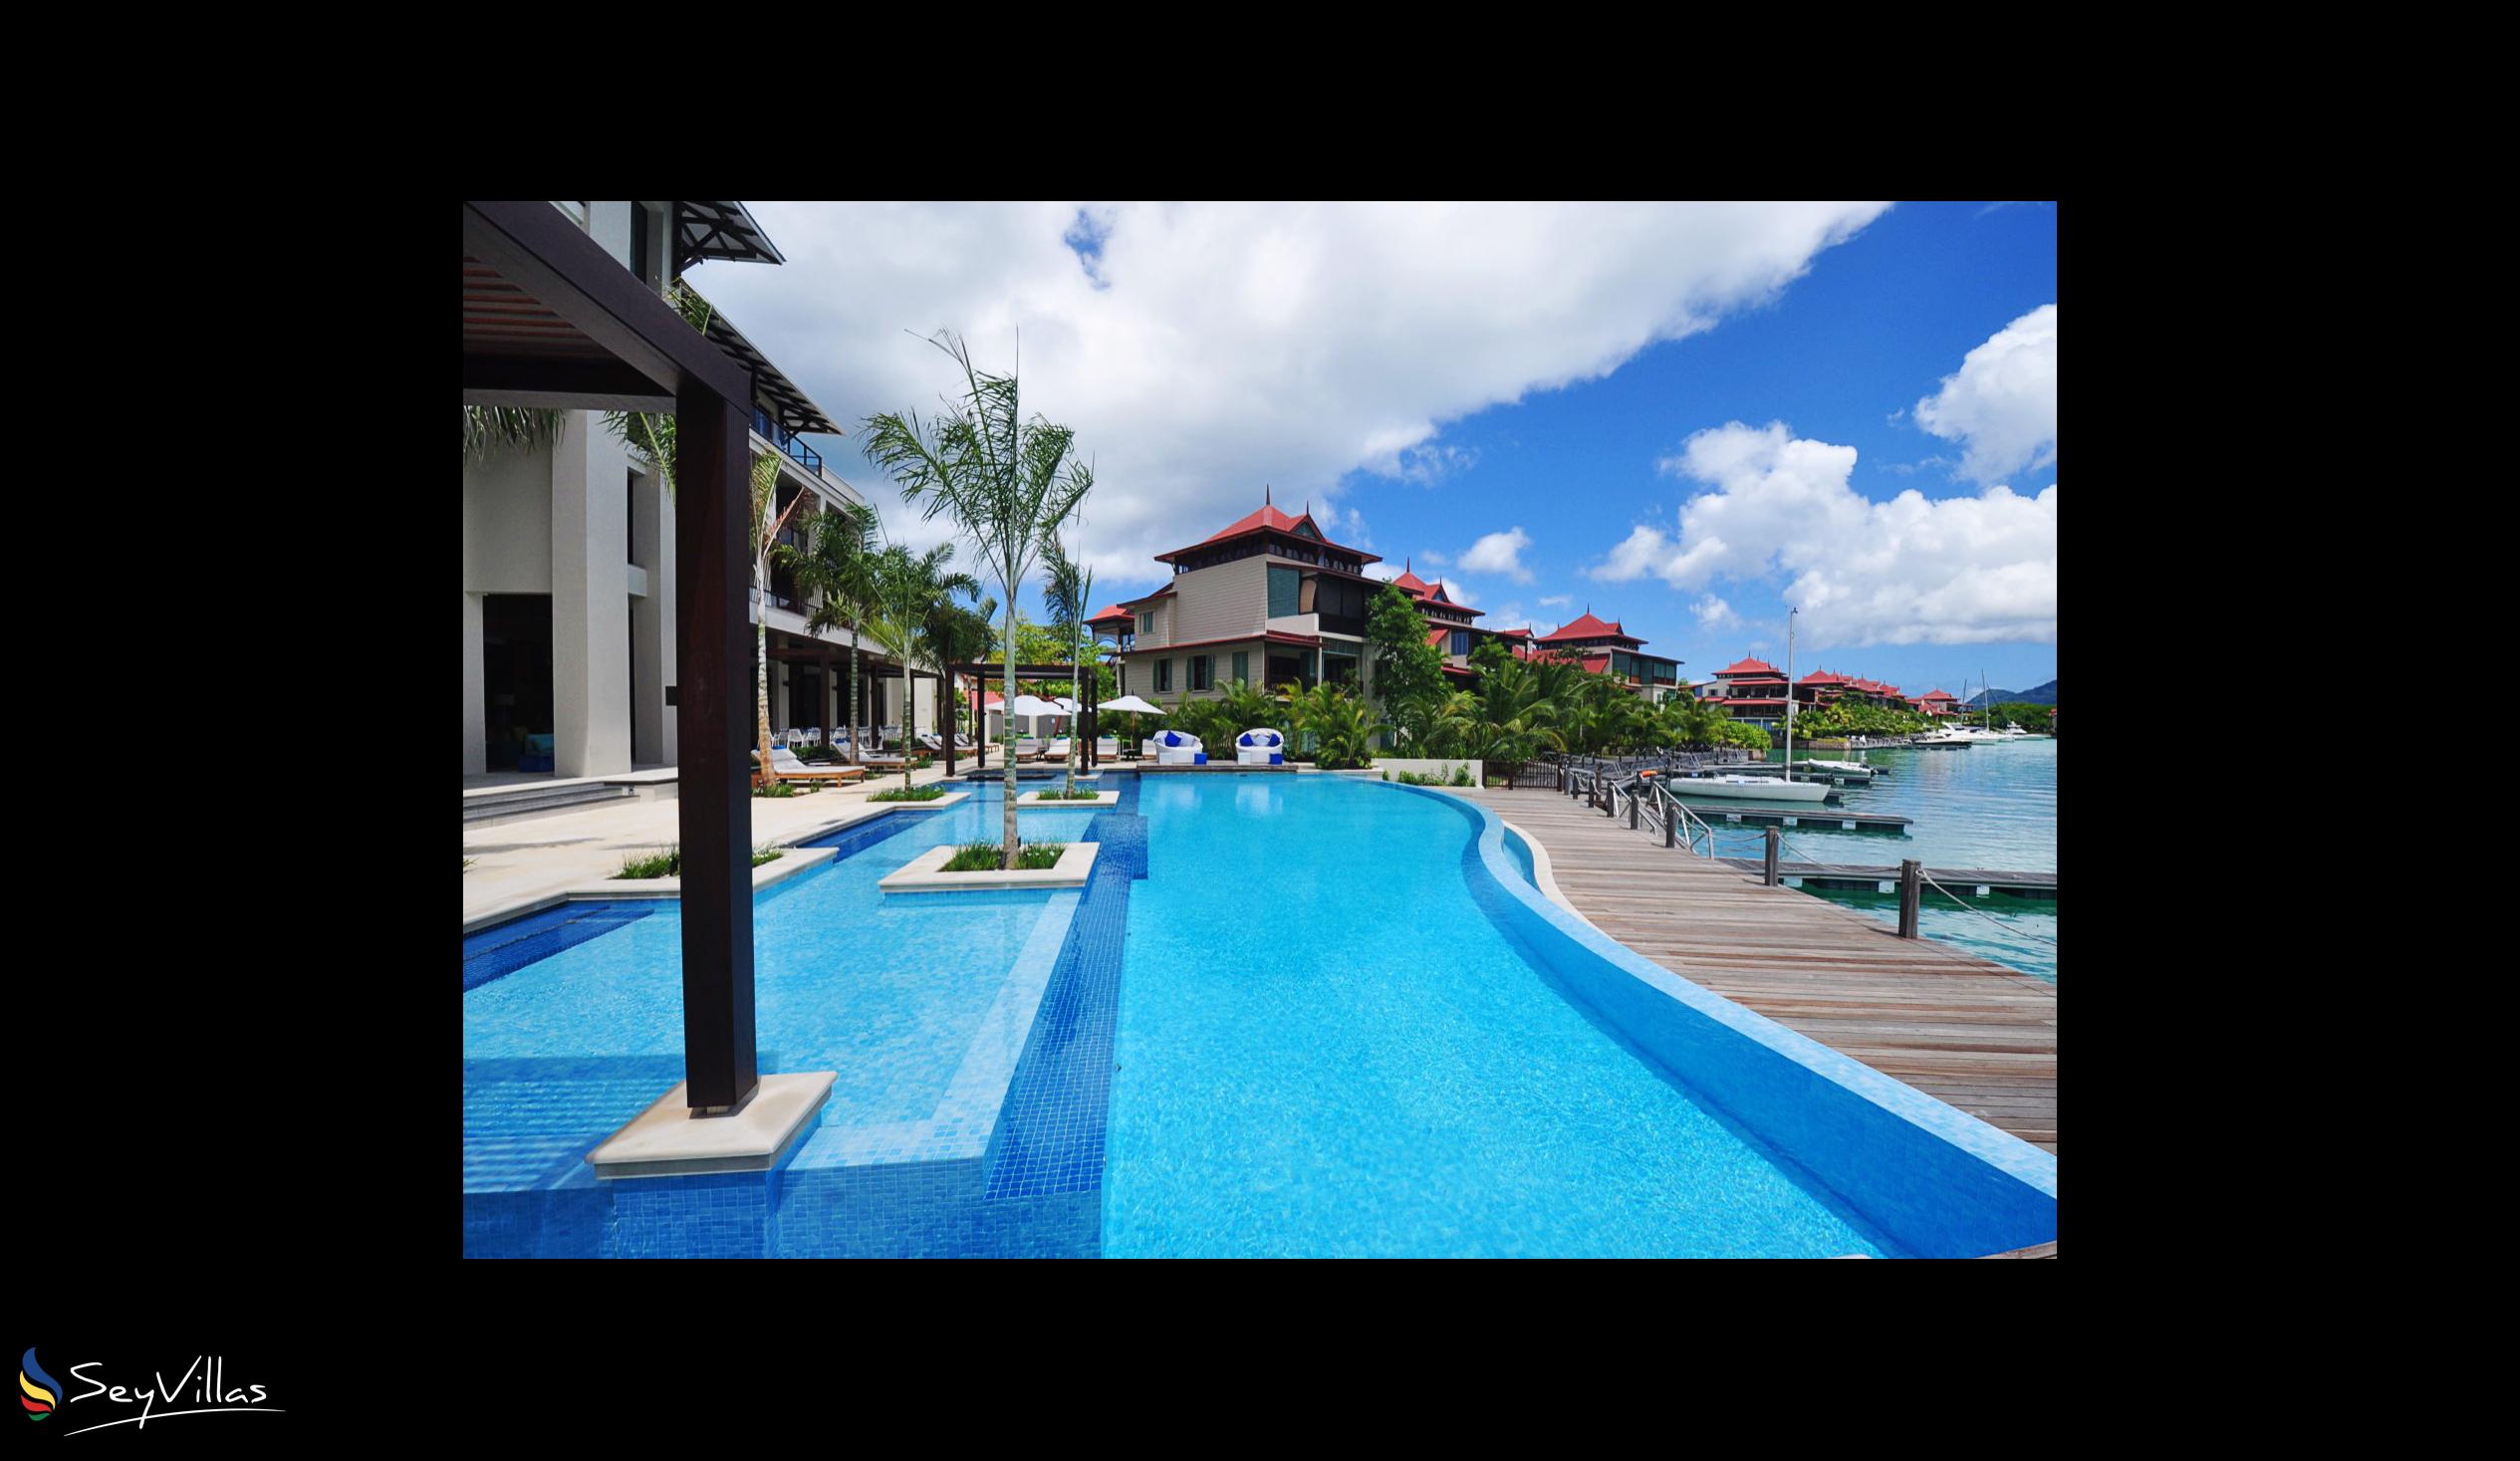 Photo 6: Eden Bleu Hotel - Outdoor area - Mahé (Seychelles)